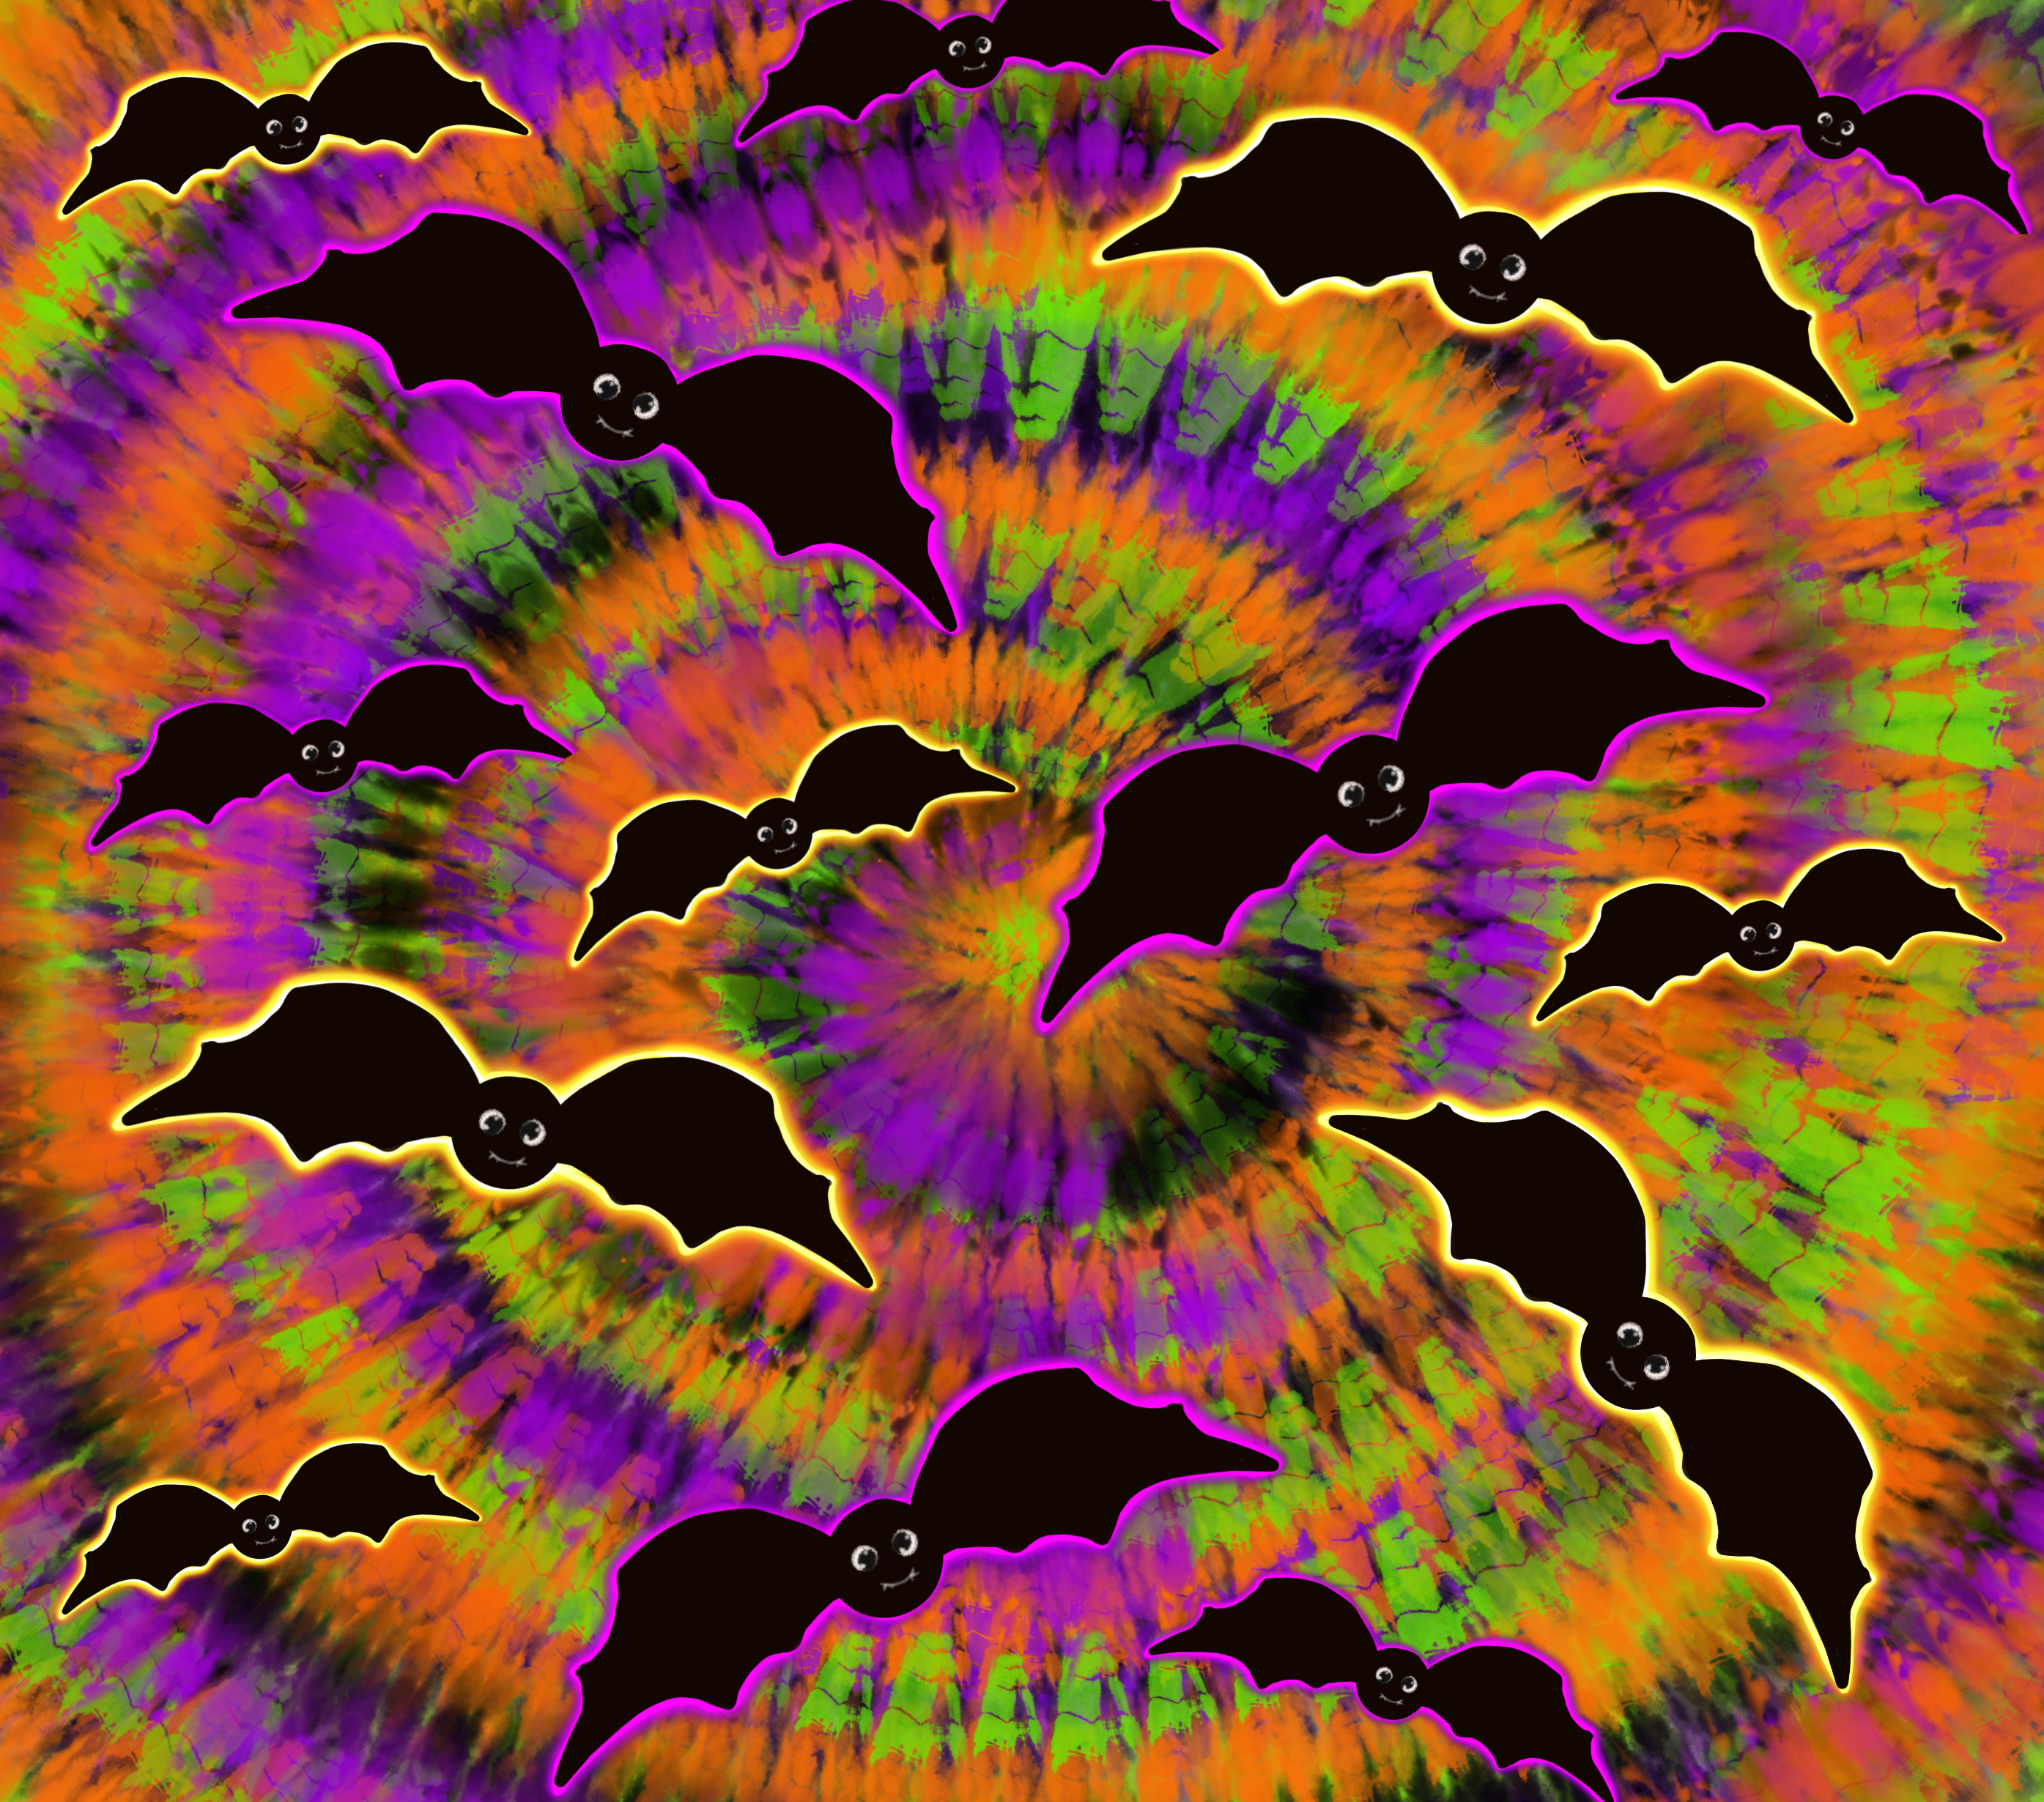 Sublimation Tumbler Wrap - Tie Dye Bats - The Vinyl Haus